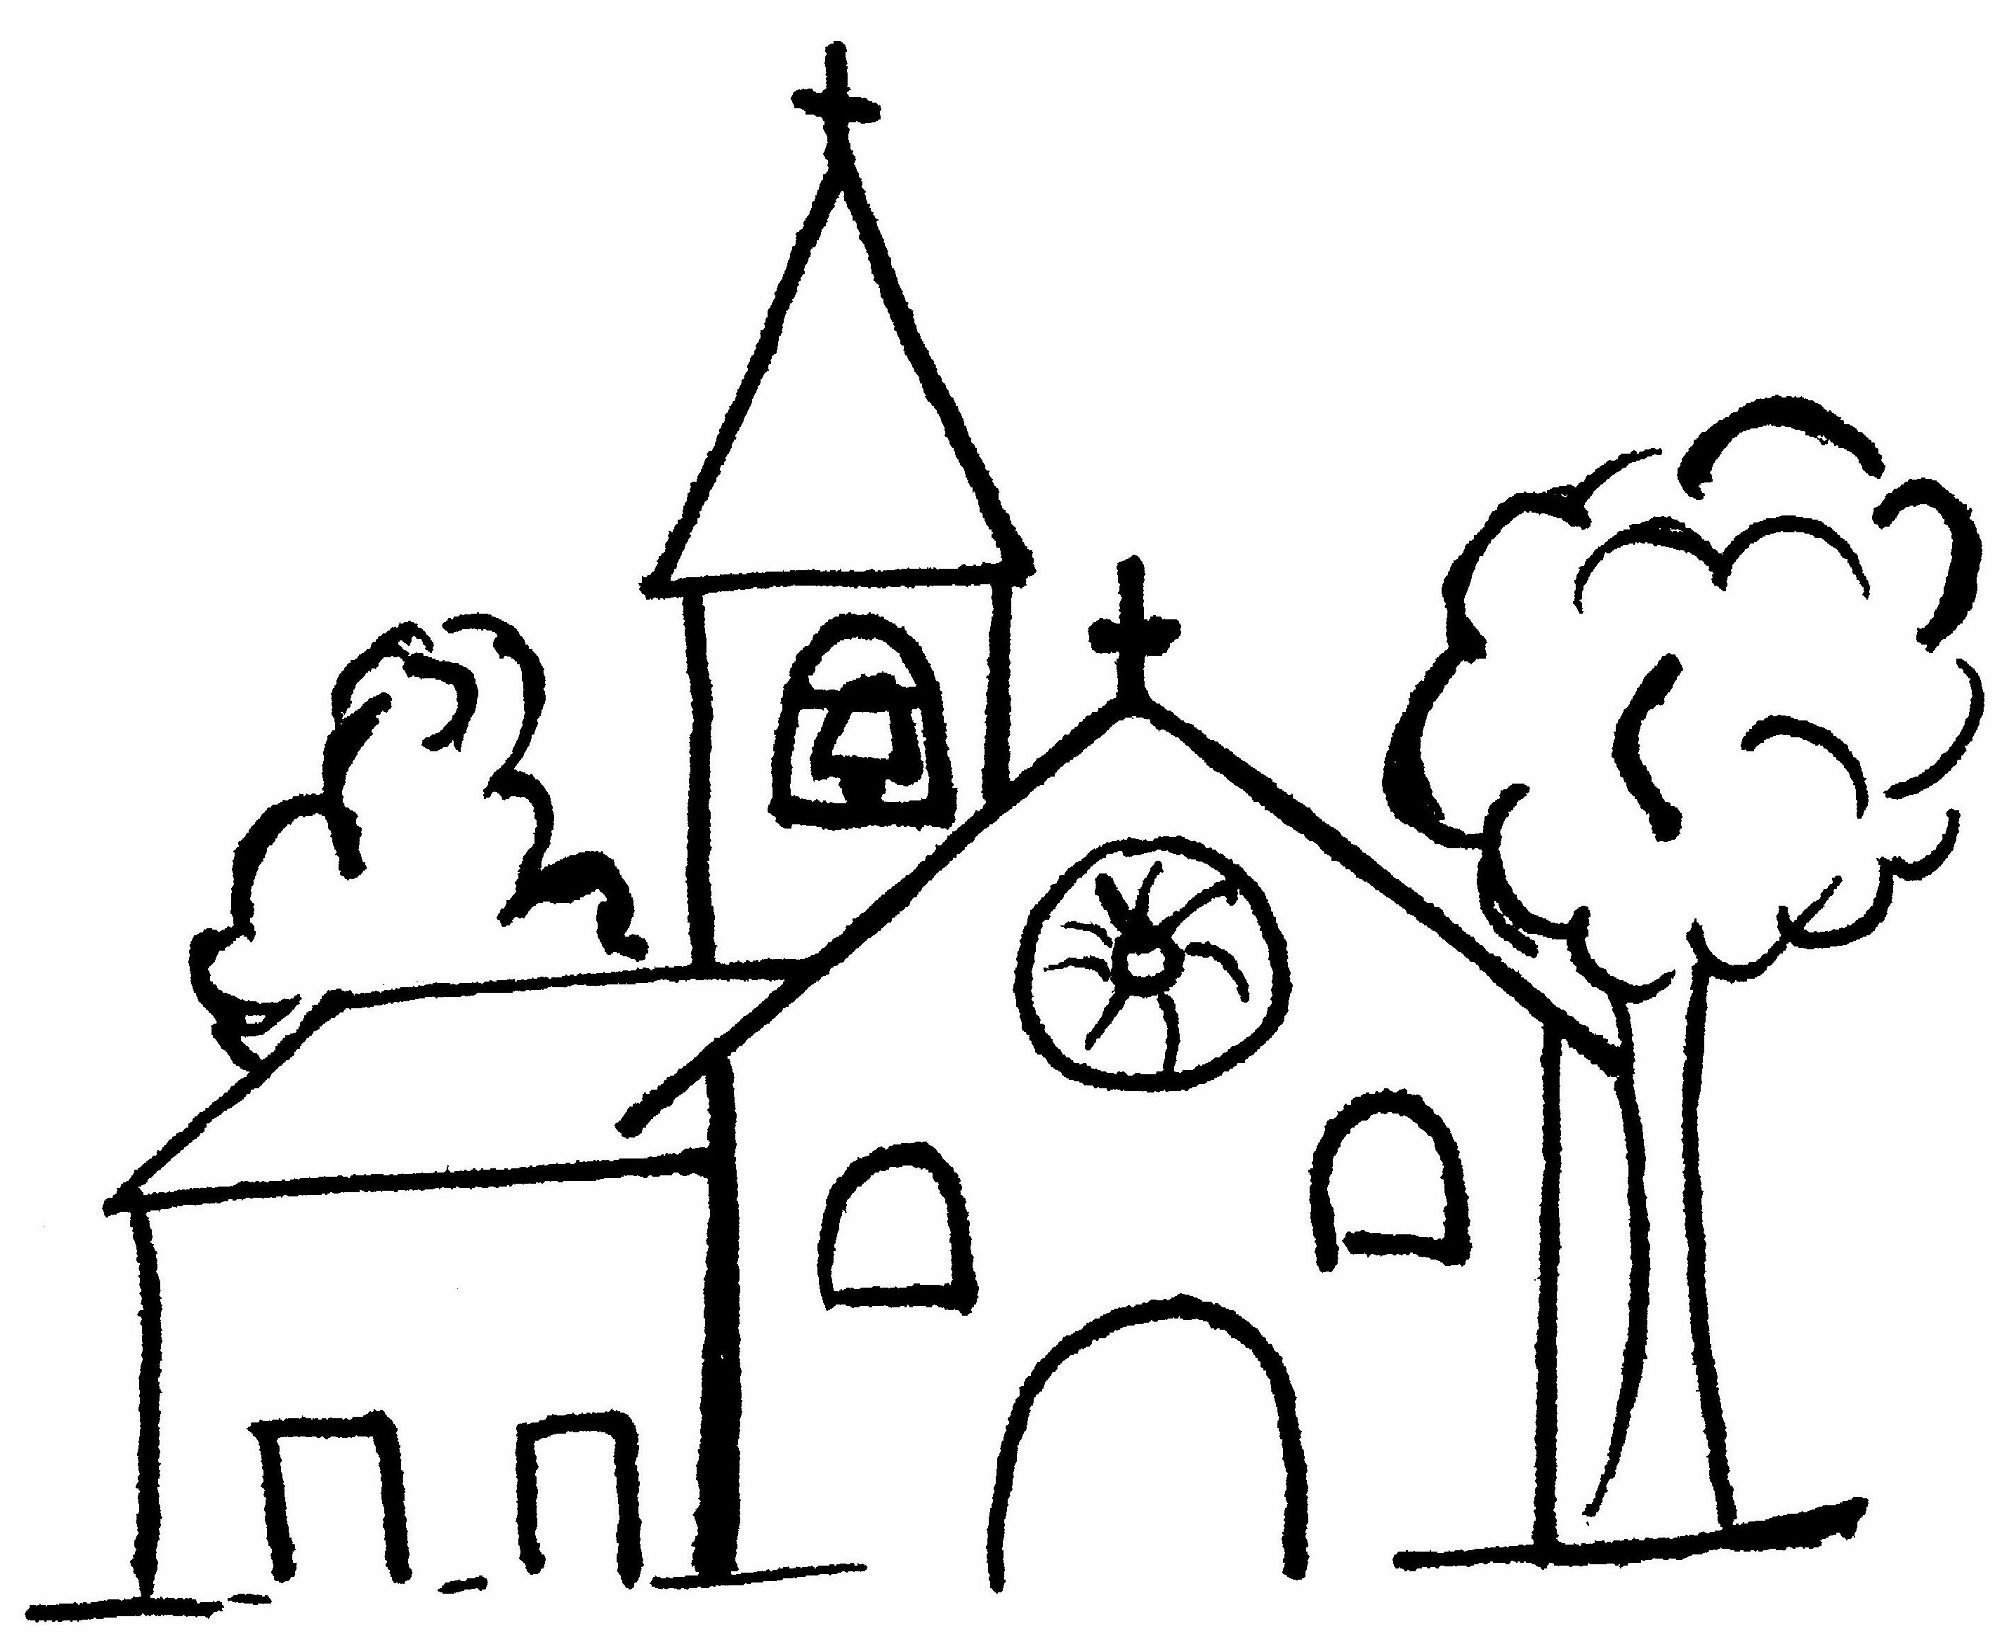 Церковь раскраска для детей